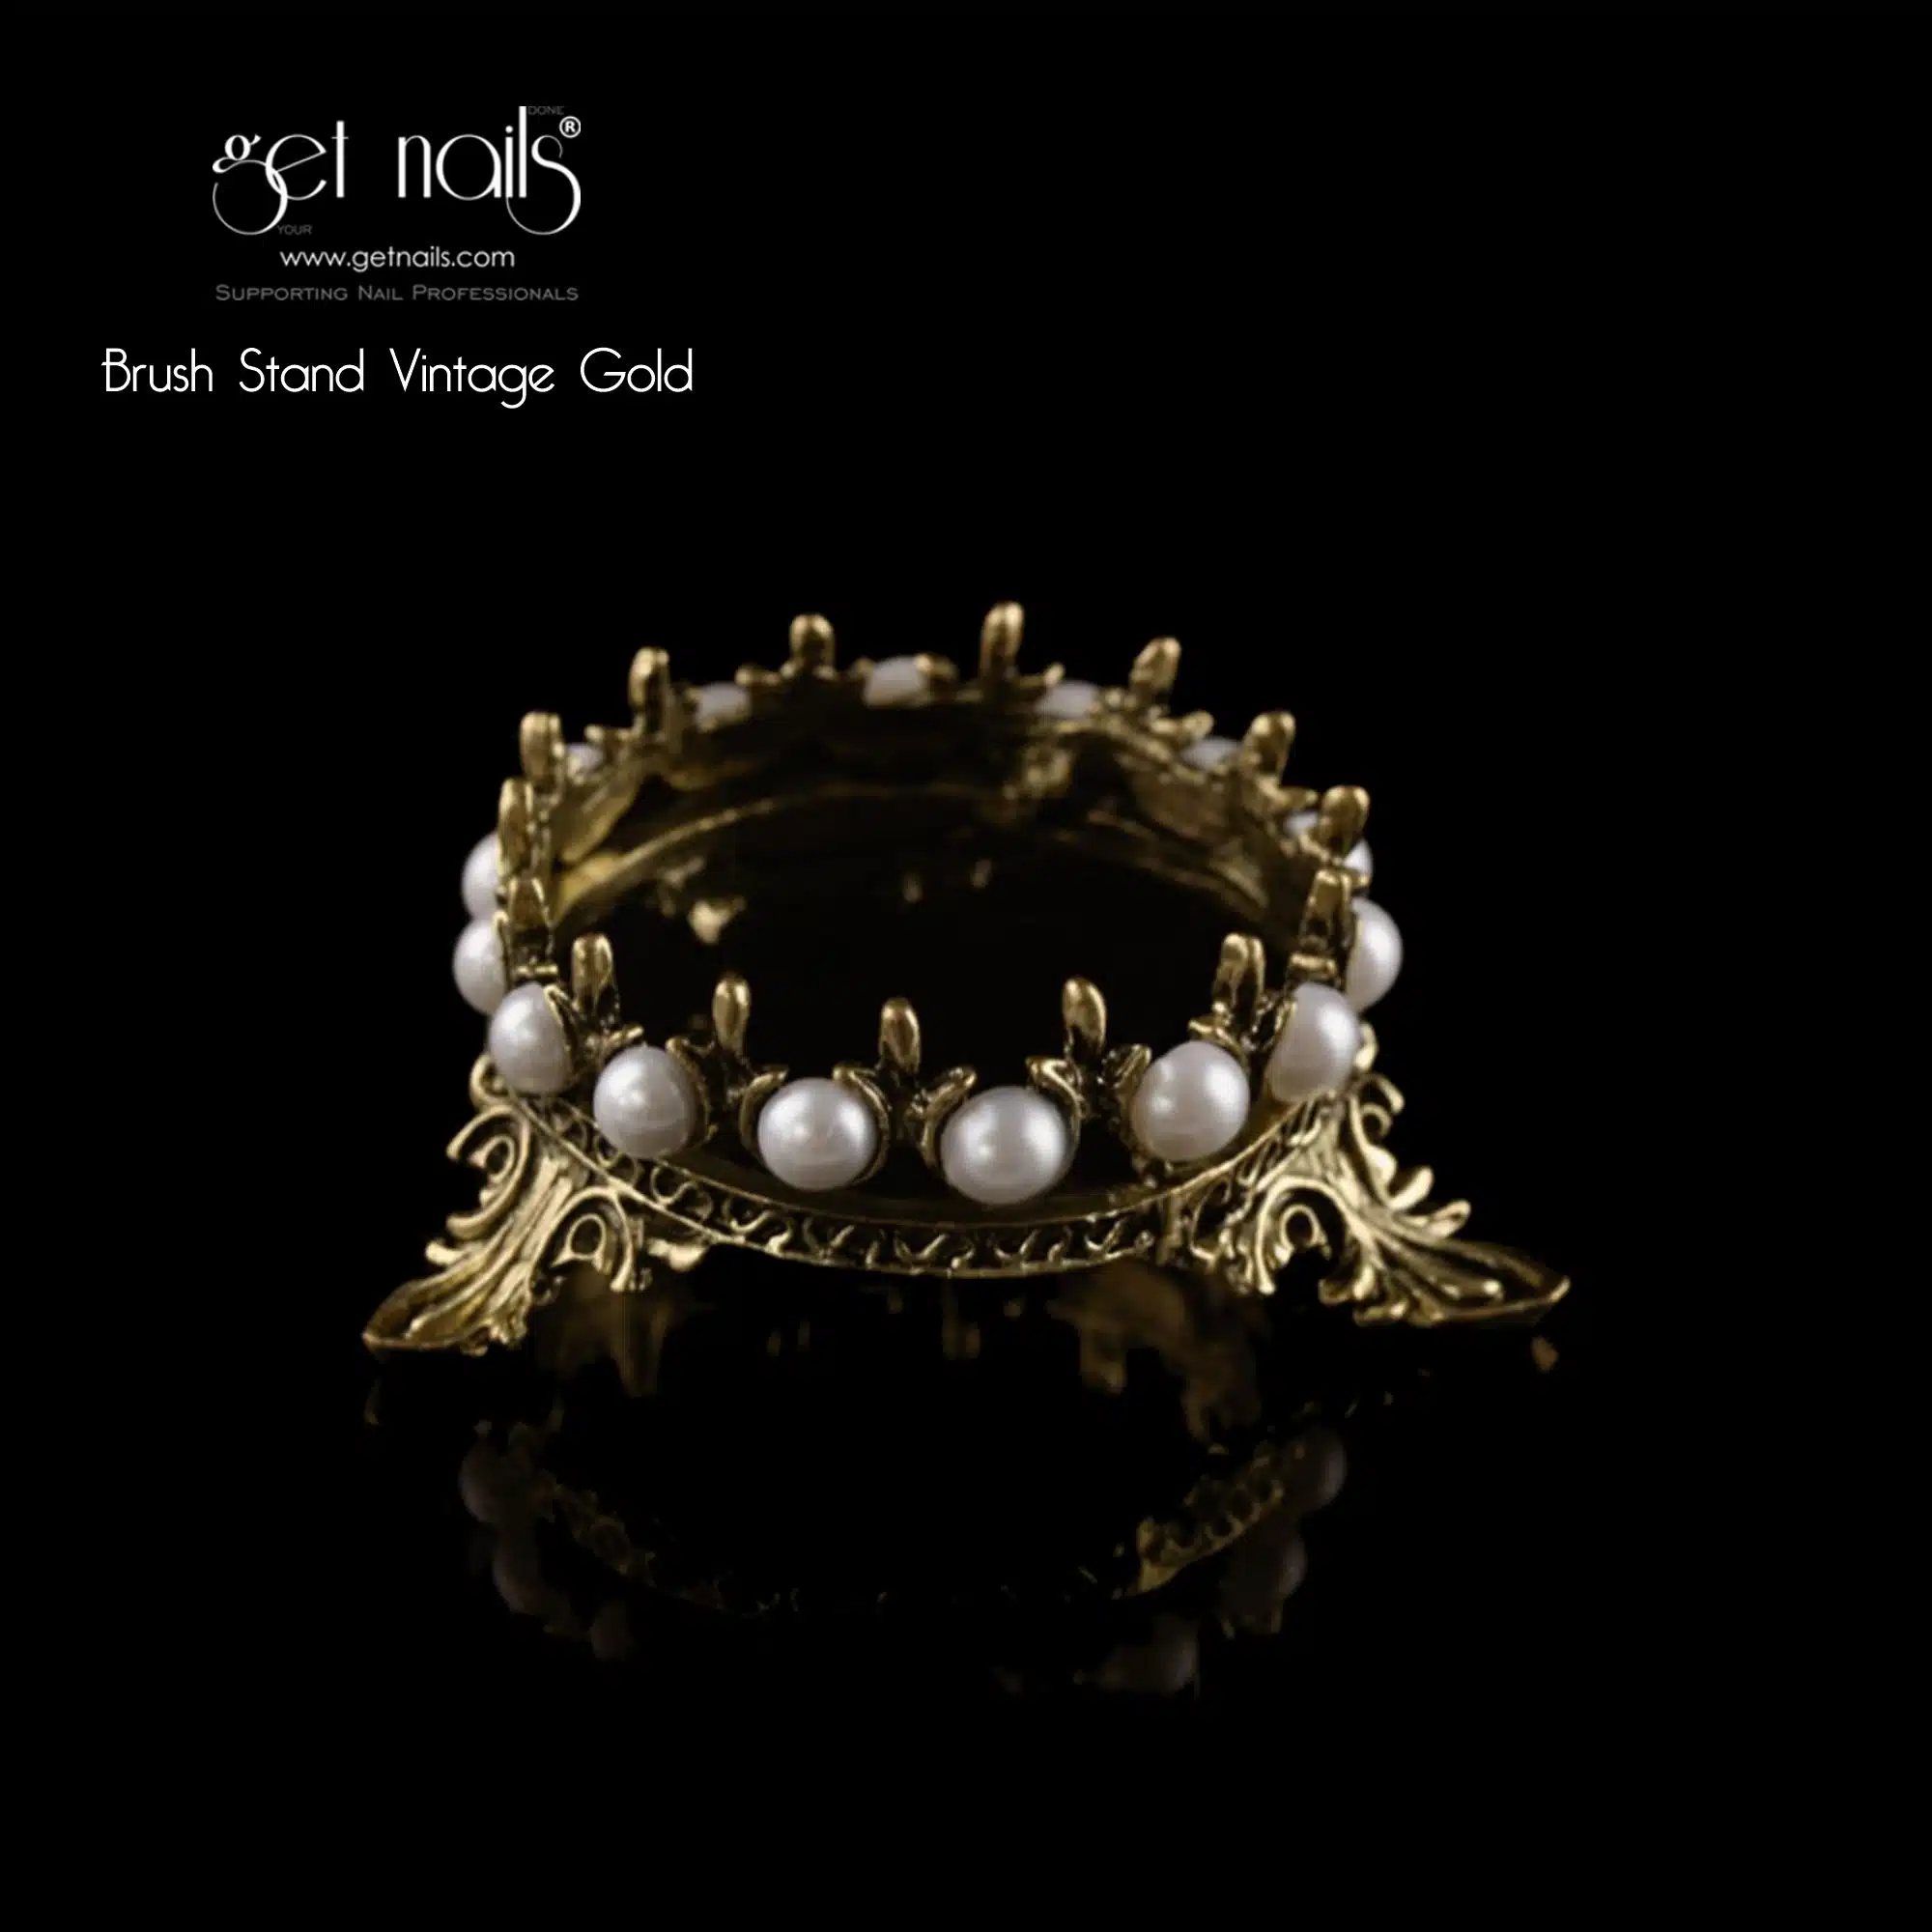 Get Nails Austria - Ecsettartó Vintage Gold